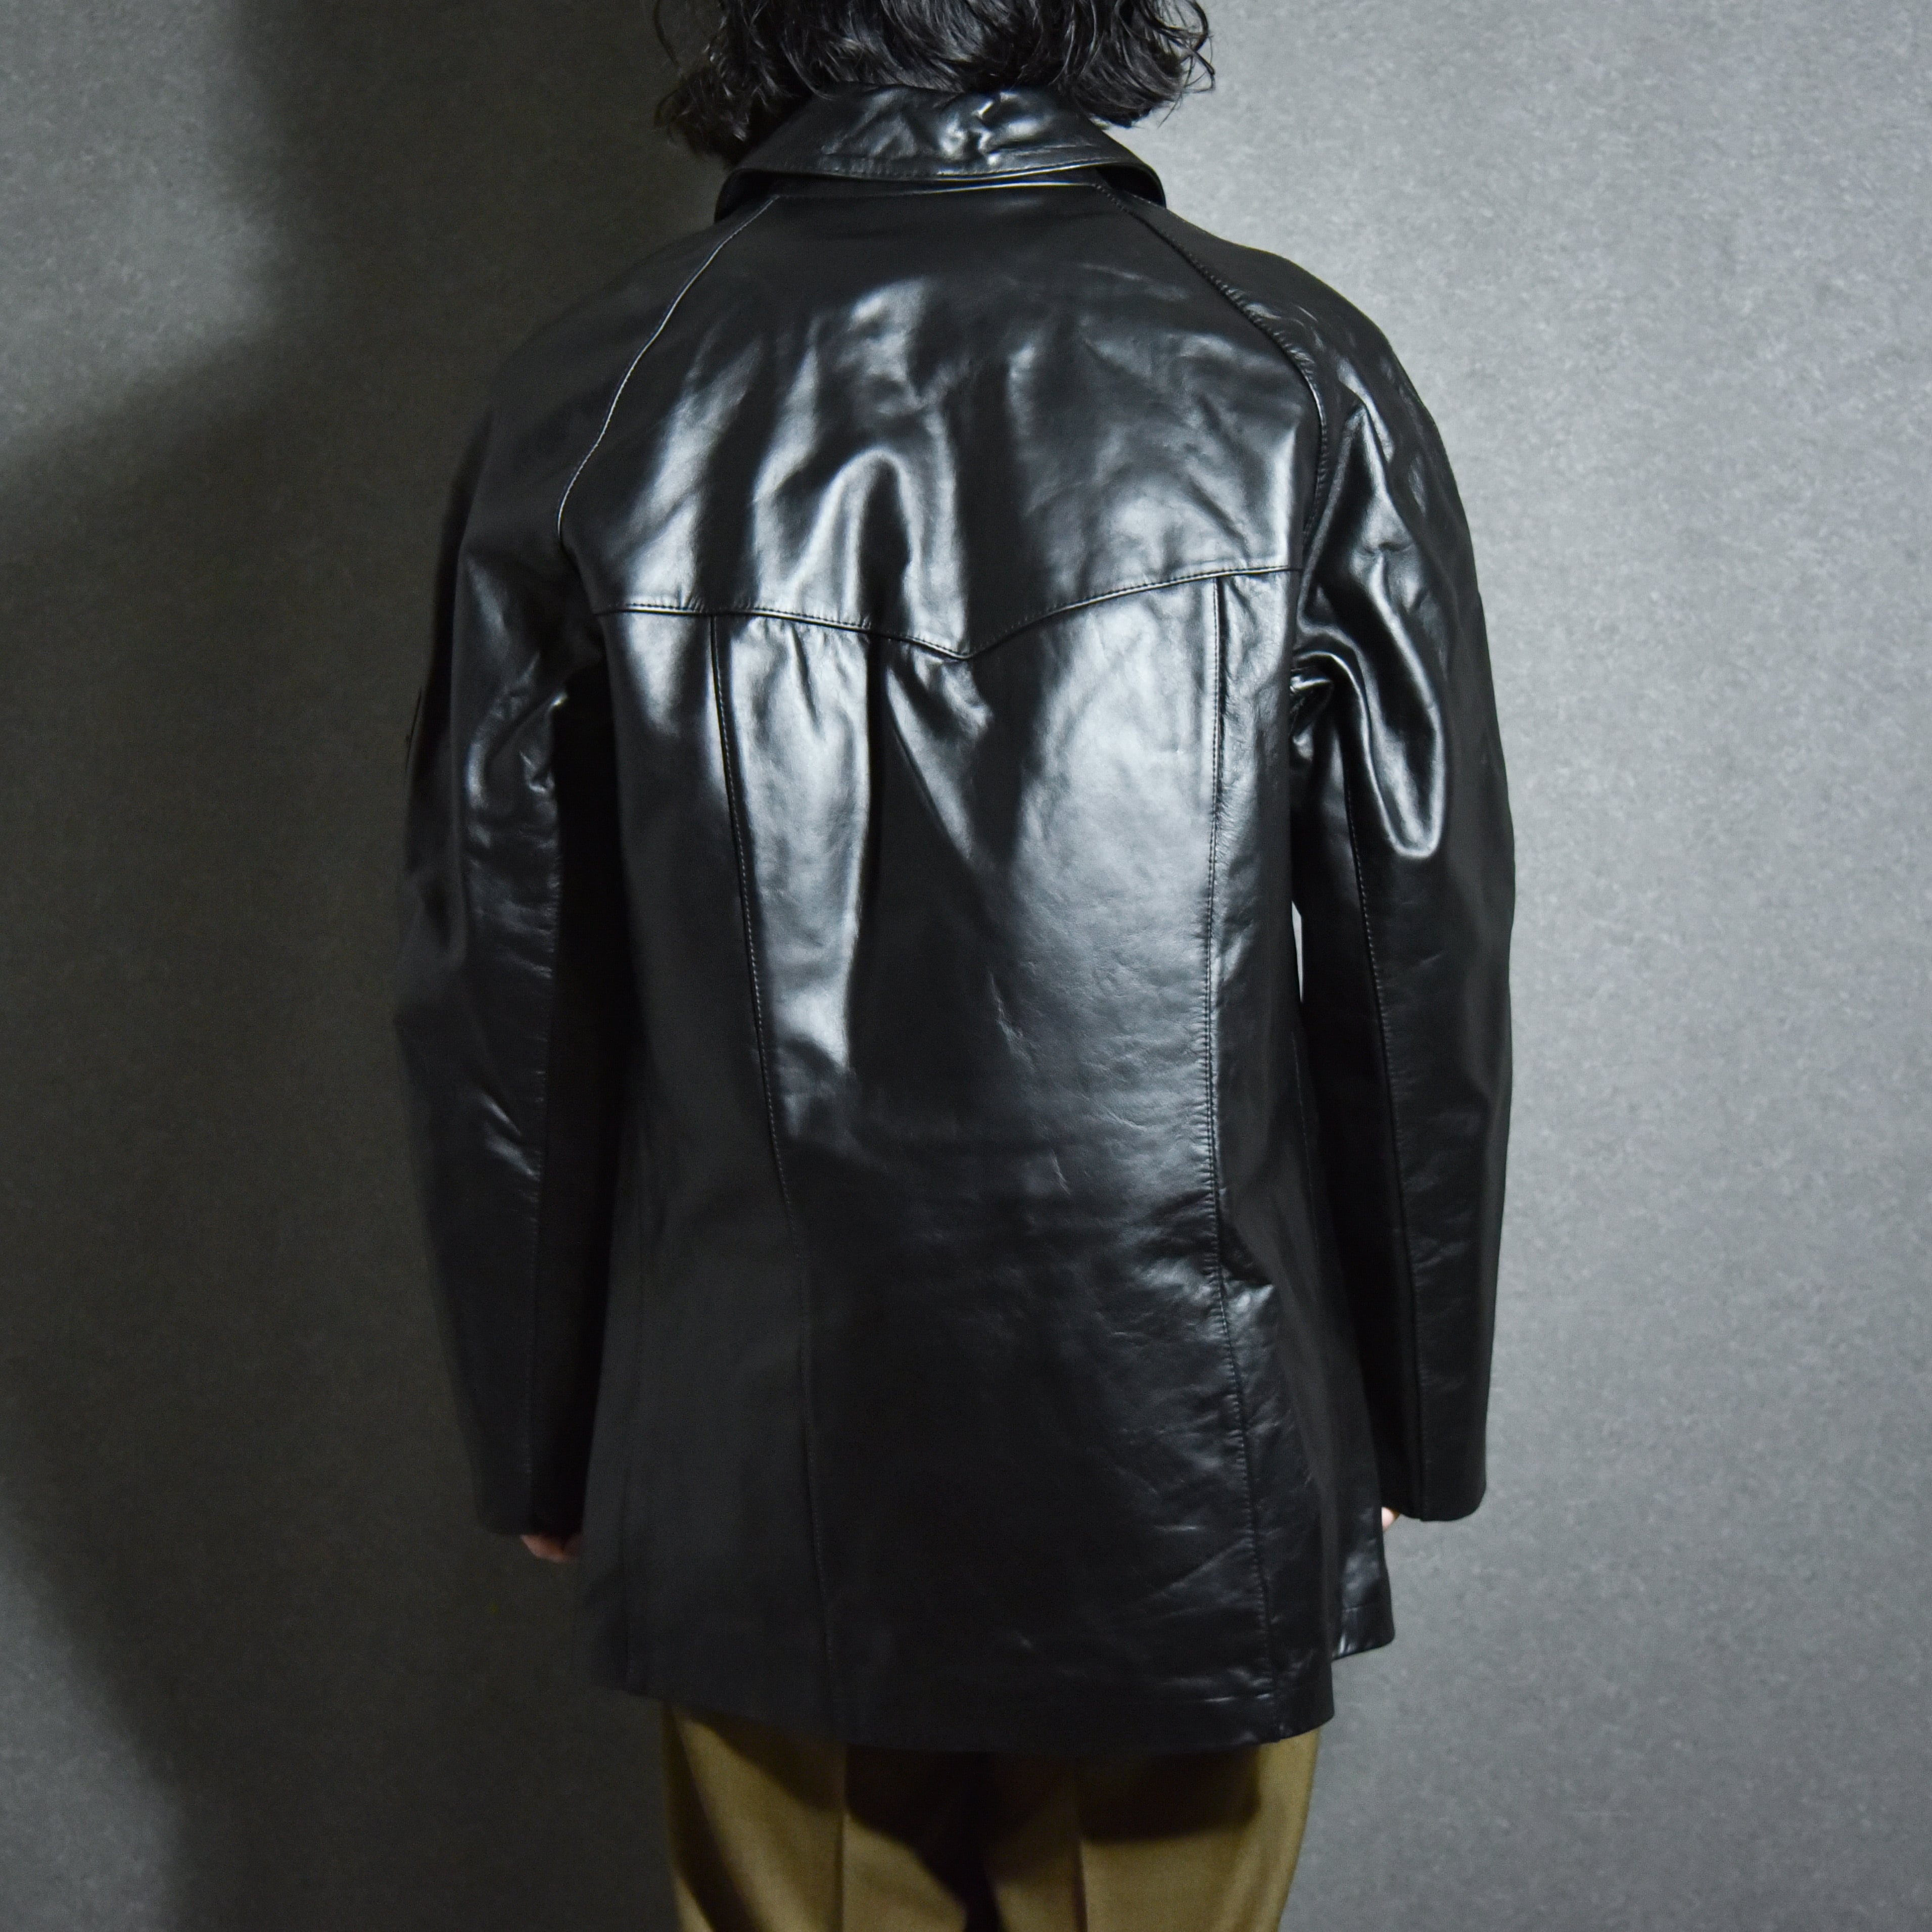 Italian Police Leather Jacket イタリアンポリス レザージャケット mark  collars  (マークアンドカラーズ)